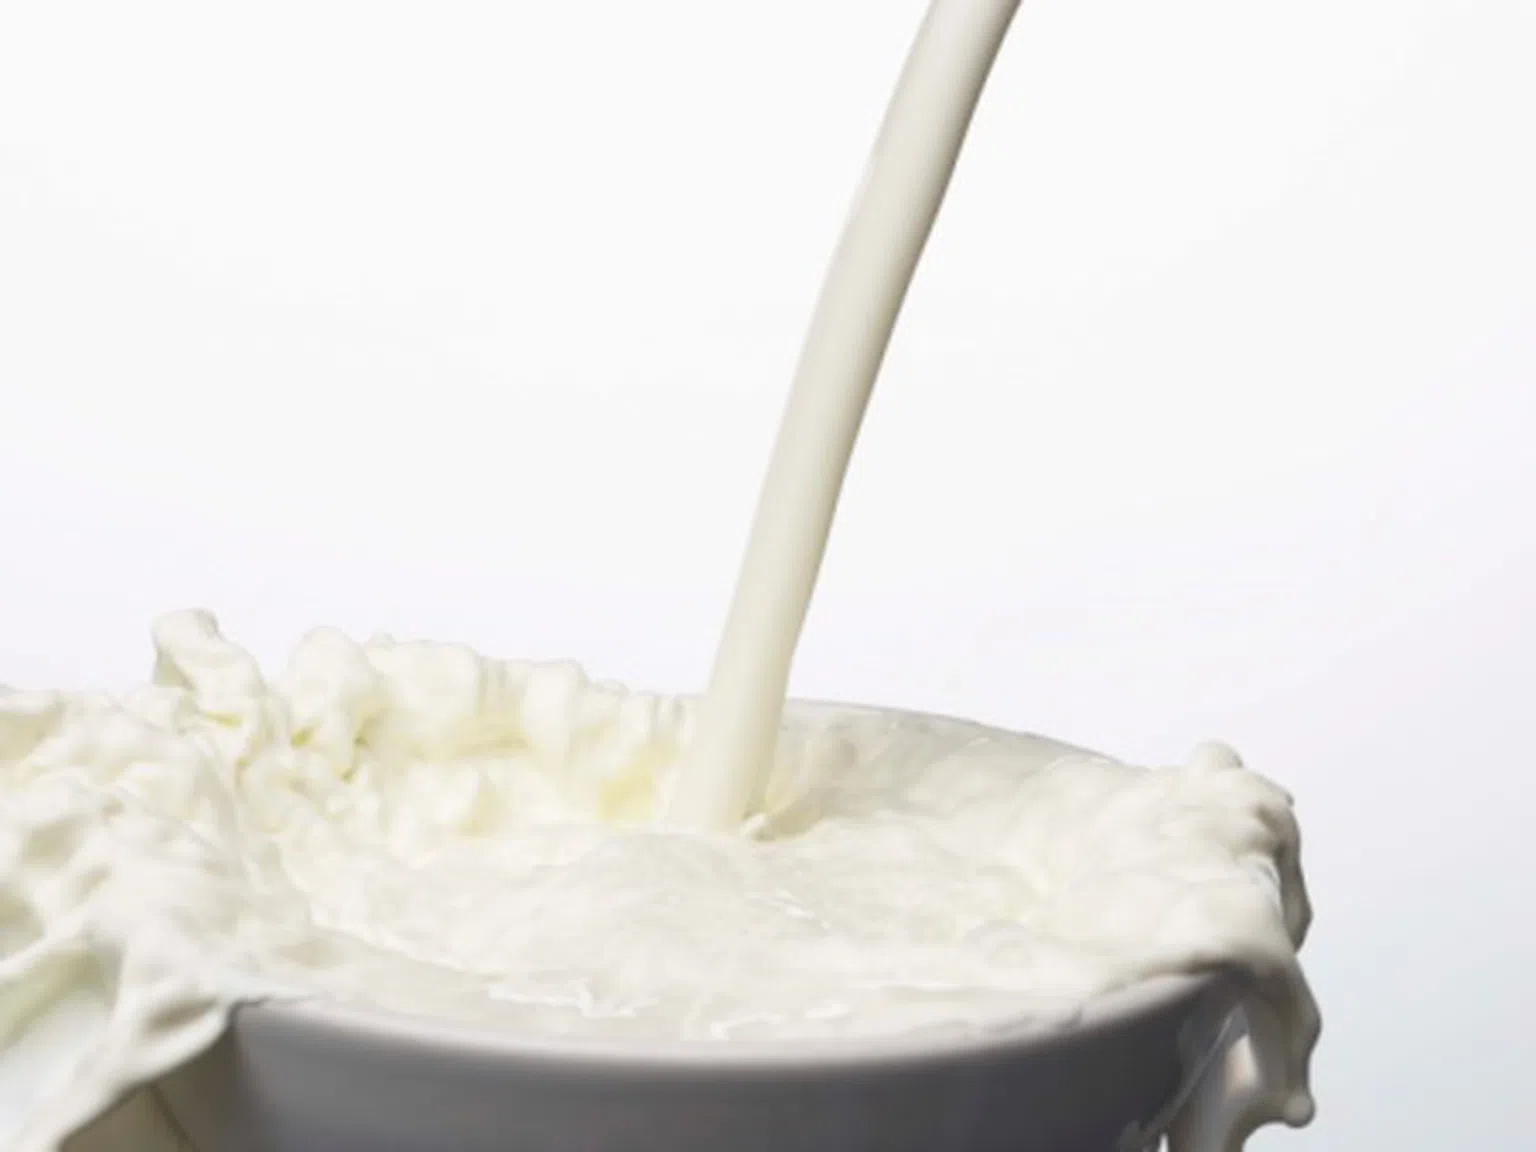 Няколко “хитрини” при употребата на млечните продукти